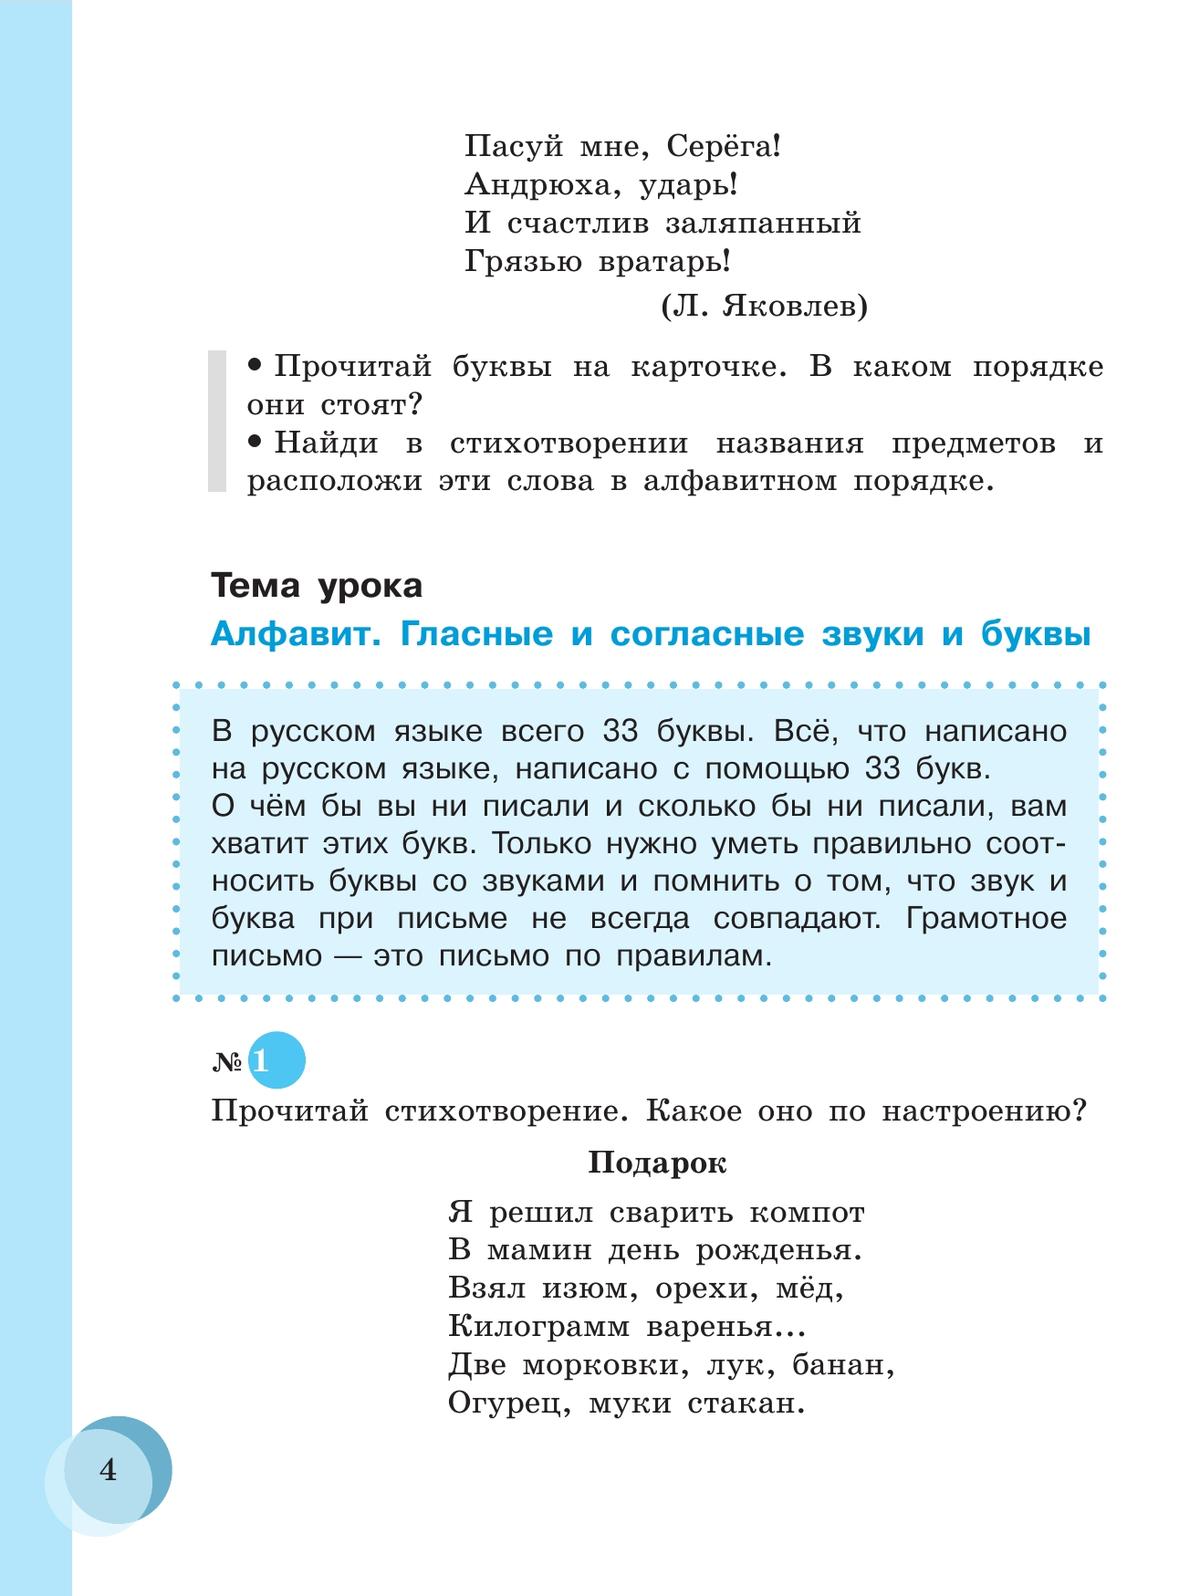 Русский язык. 7 класс. Учебник (для обучающихся с интеллектуальными нарушениями) 6